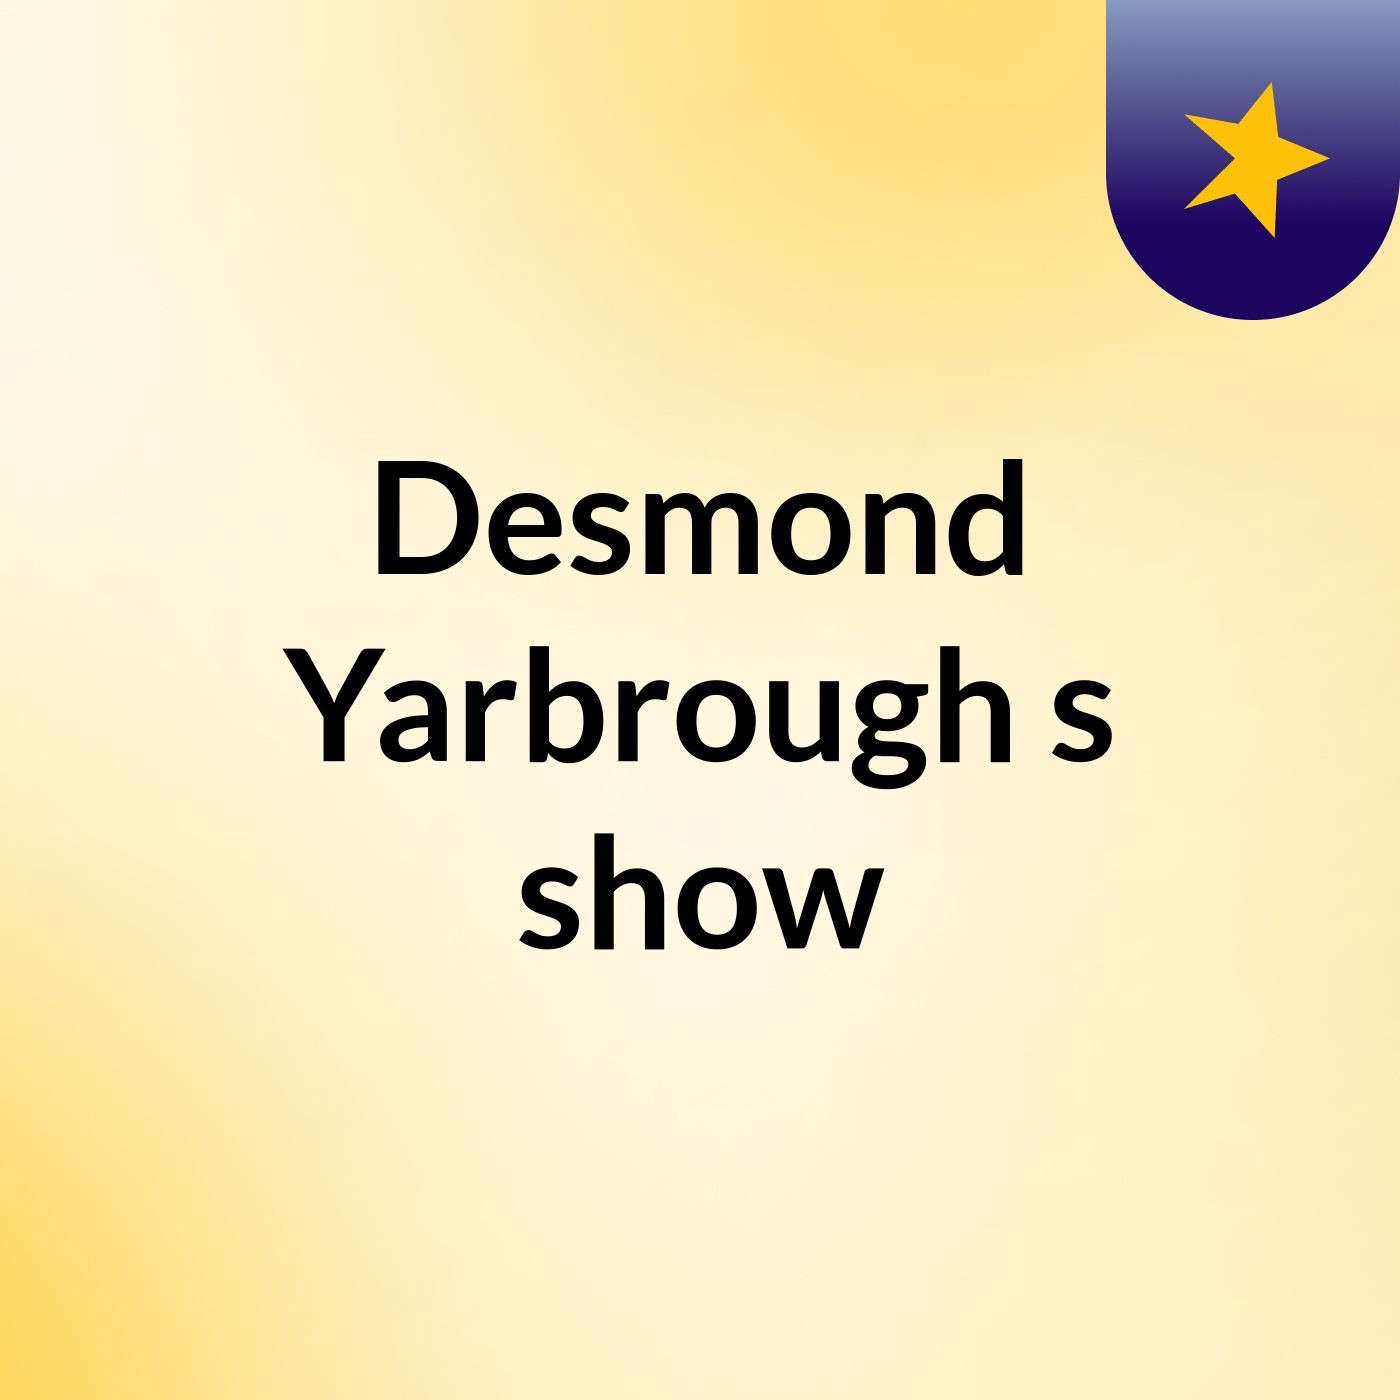 Episode 20 - Desmond Yarbrough's show